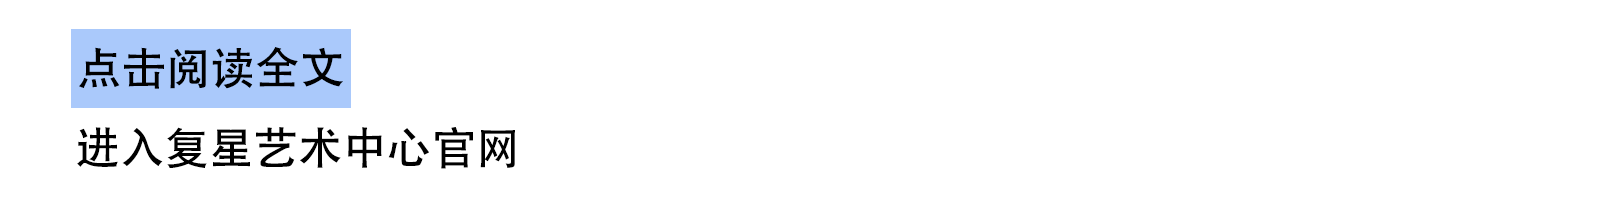 云艺坊｜天台写生春日回归，在“外滩最美天台”描绘你眼中的风景 外滩 天台 眼中 风景 云艺坊 上海 复星艺术中心 法国 艺术家 贝唐·拉维耶 崇真艺客